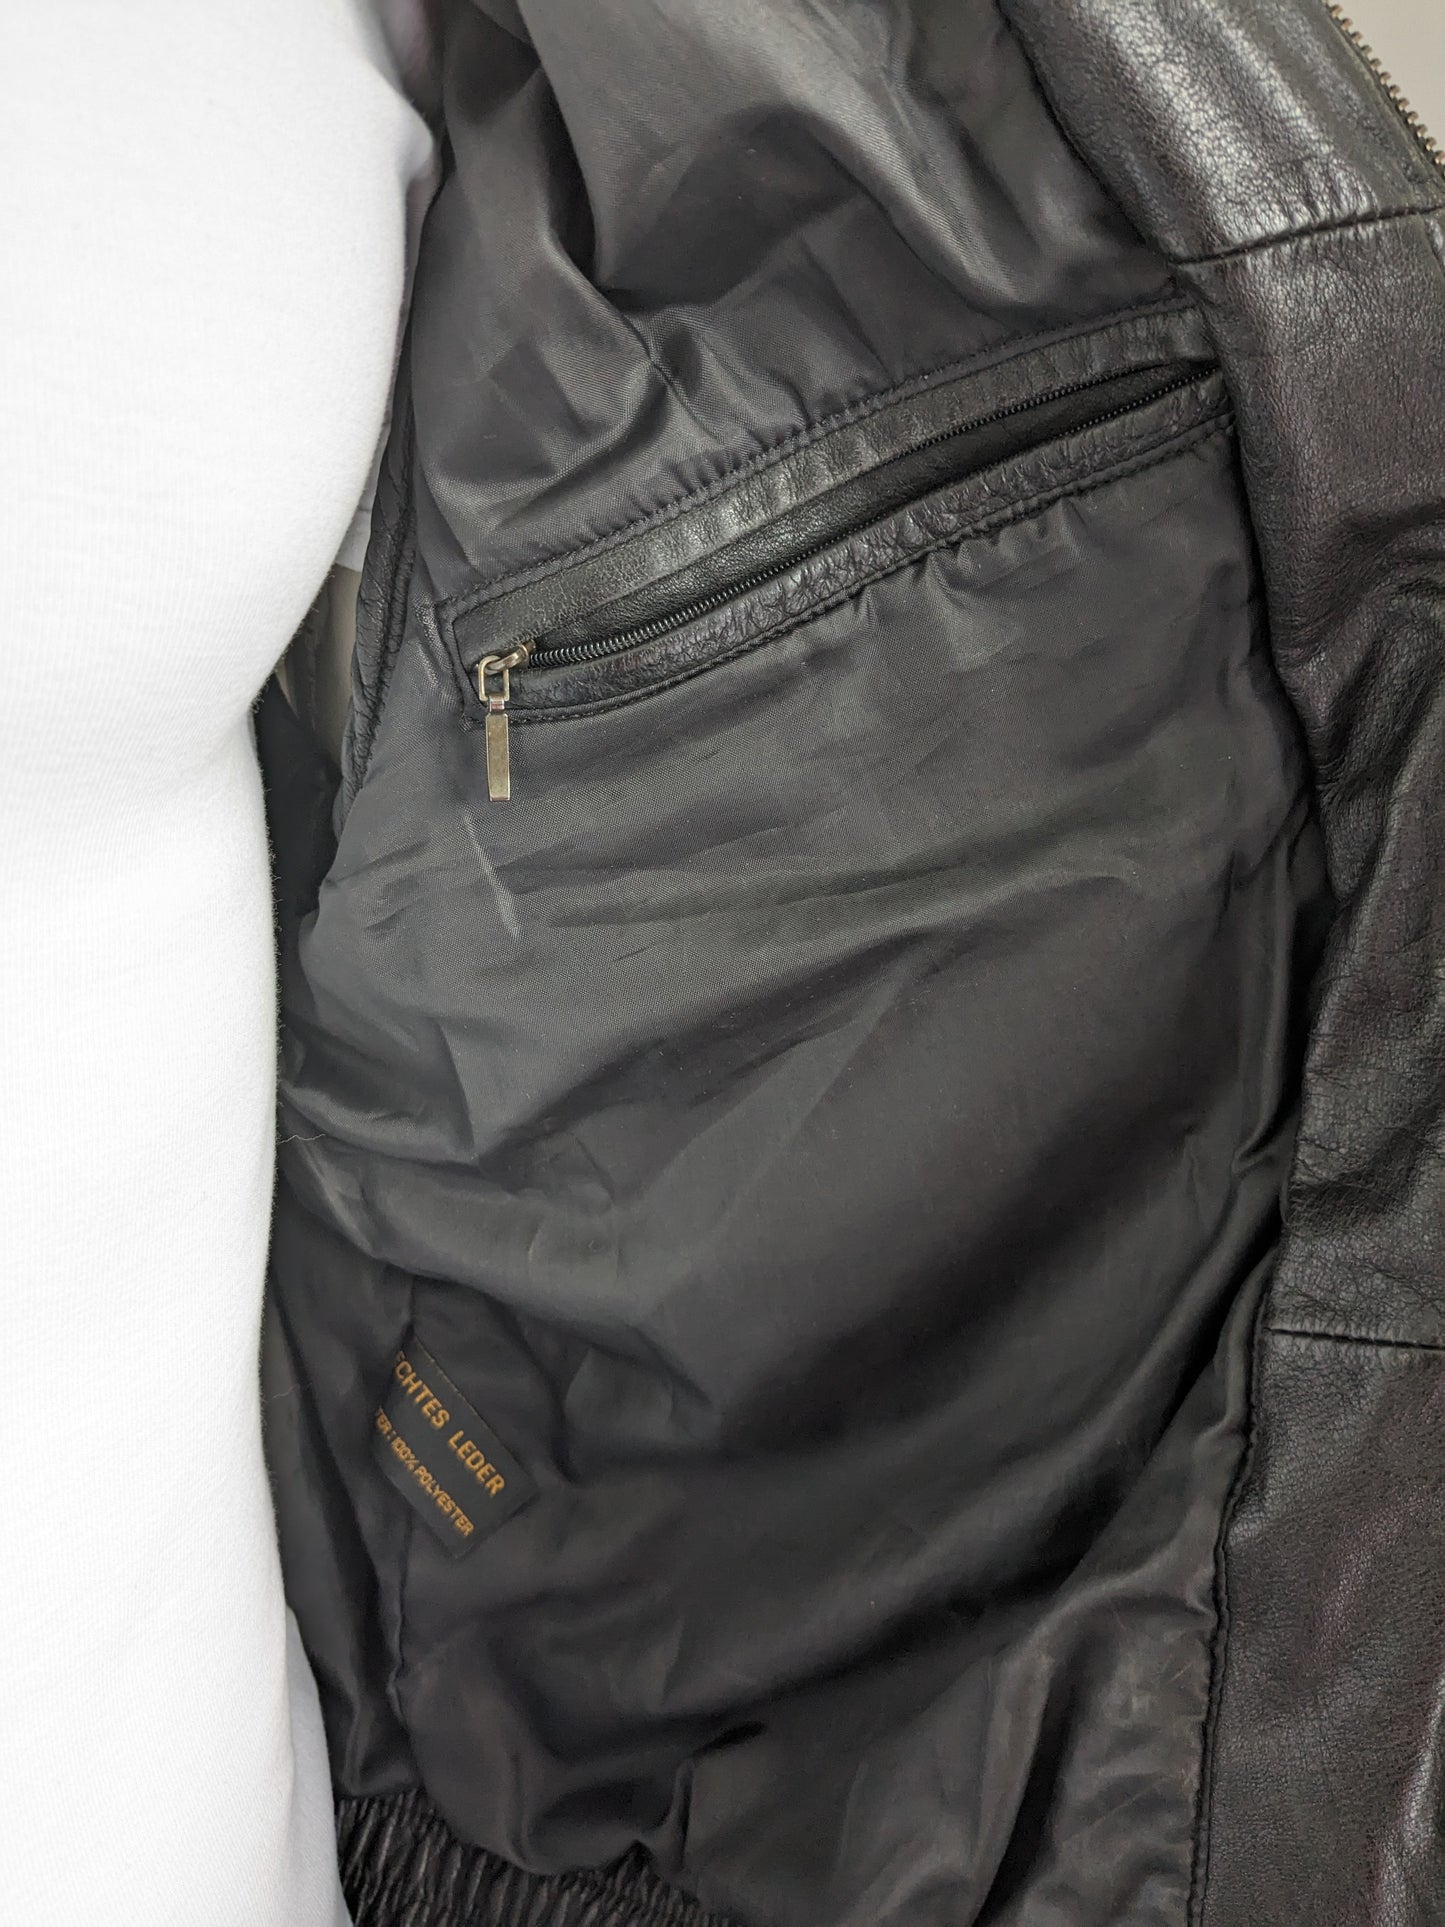 Vintage Prince Leather Body Body. Color negro. Tamaño 52 / L. con 2 bolsillos internos.